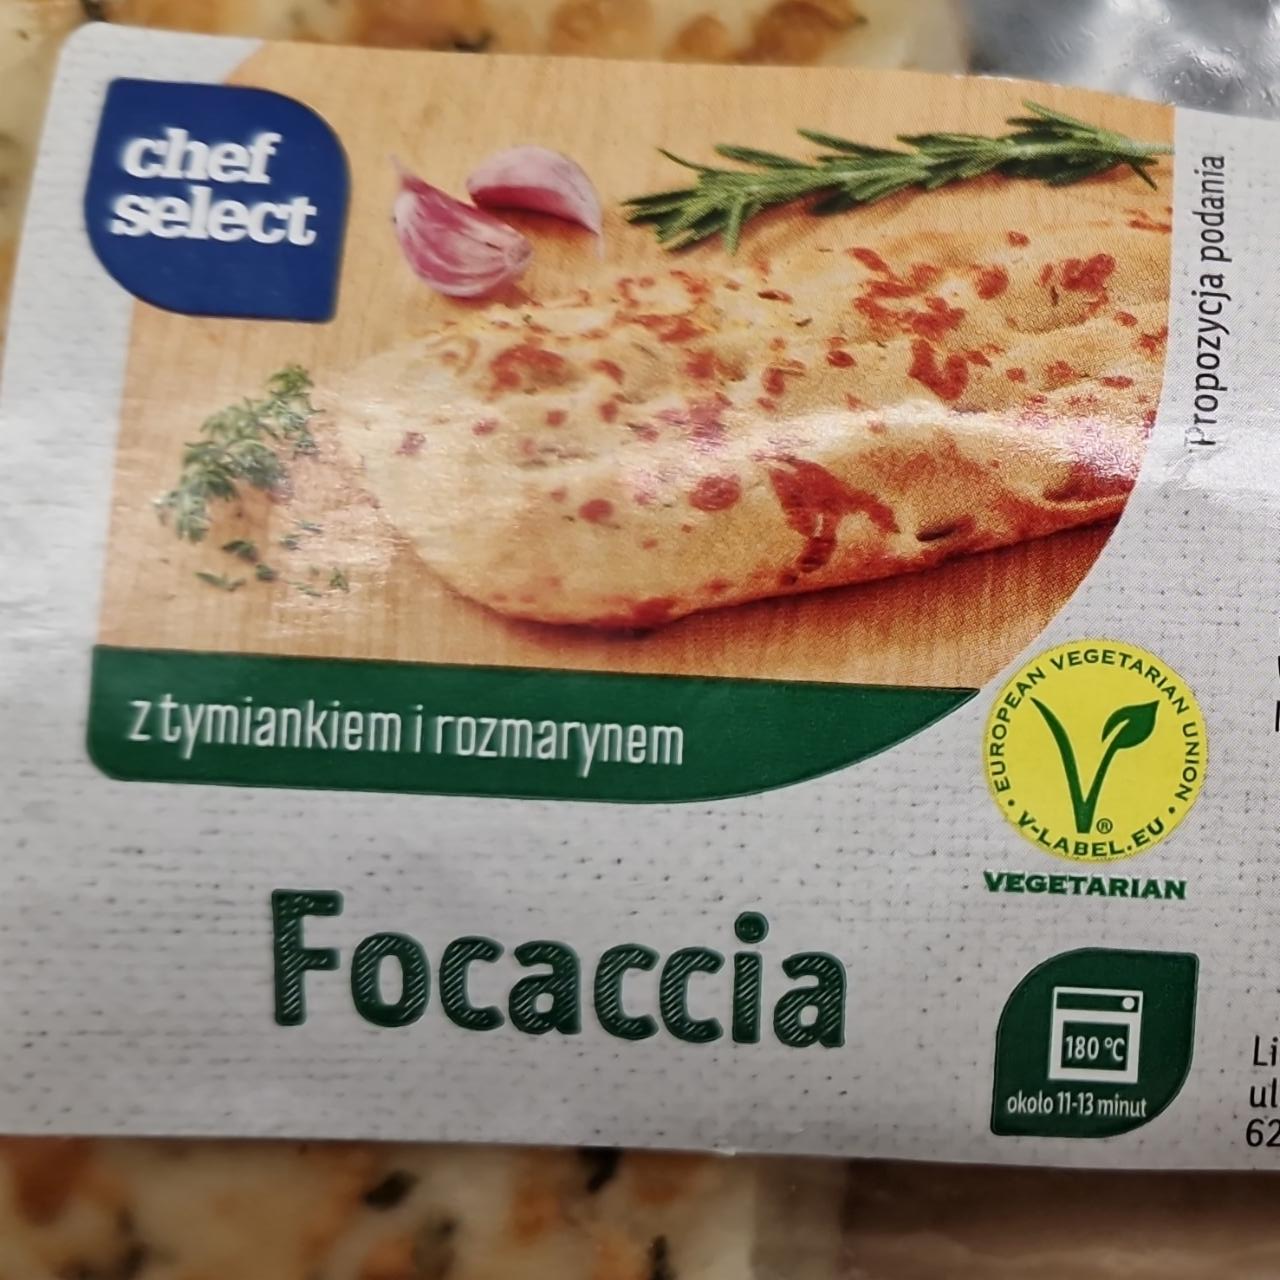 Zdjęcia - Focaccia z tymiankiem i rozmarynem chef select